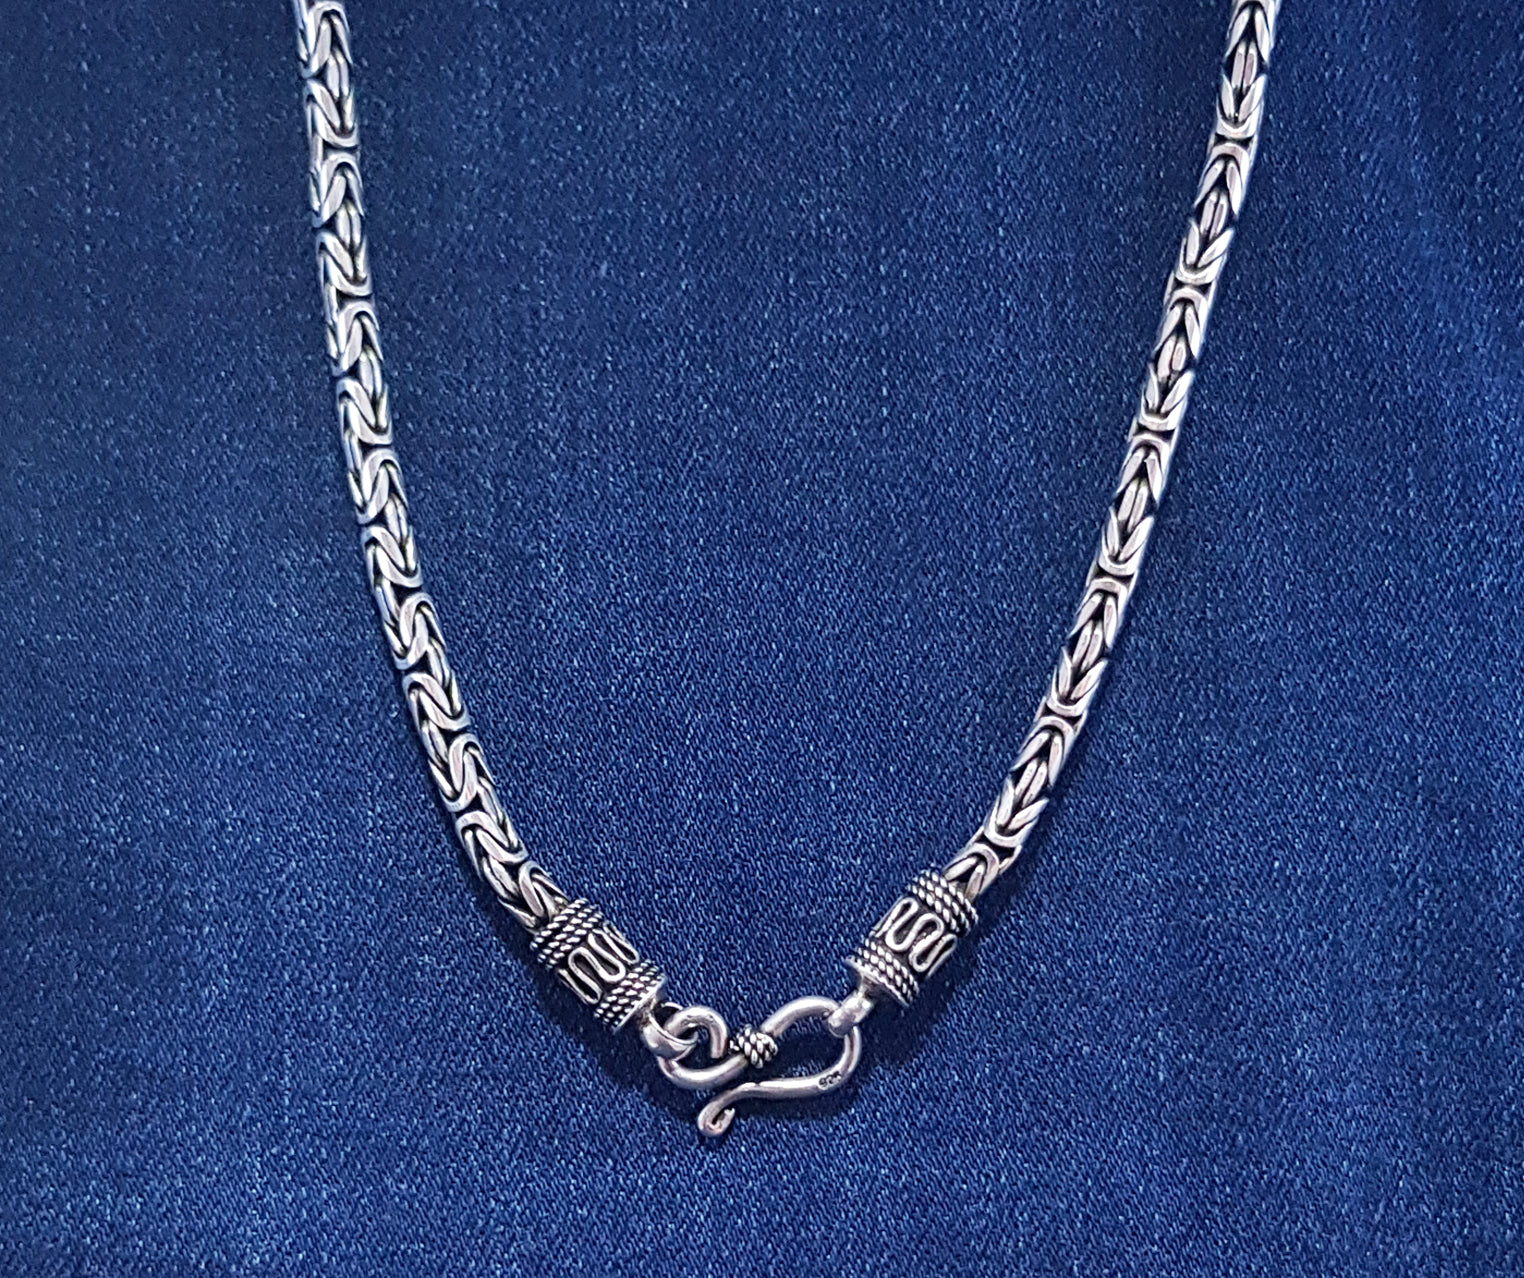 Buy Silver Stainless Steel Oxidized Finish 8mm Byzantine Chain Biker  Bracelet Online - Inox Jewelry India